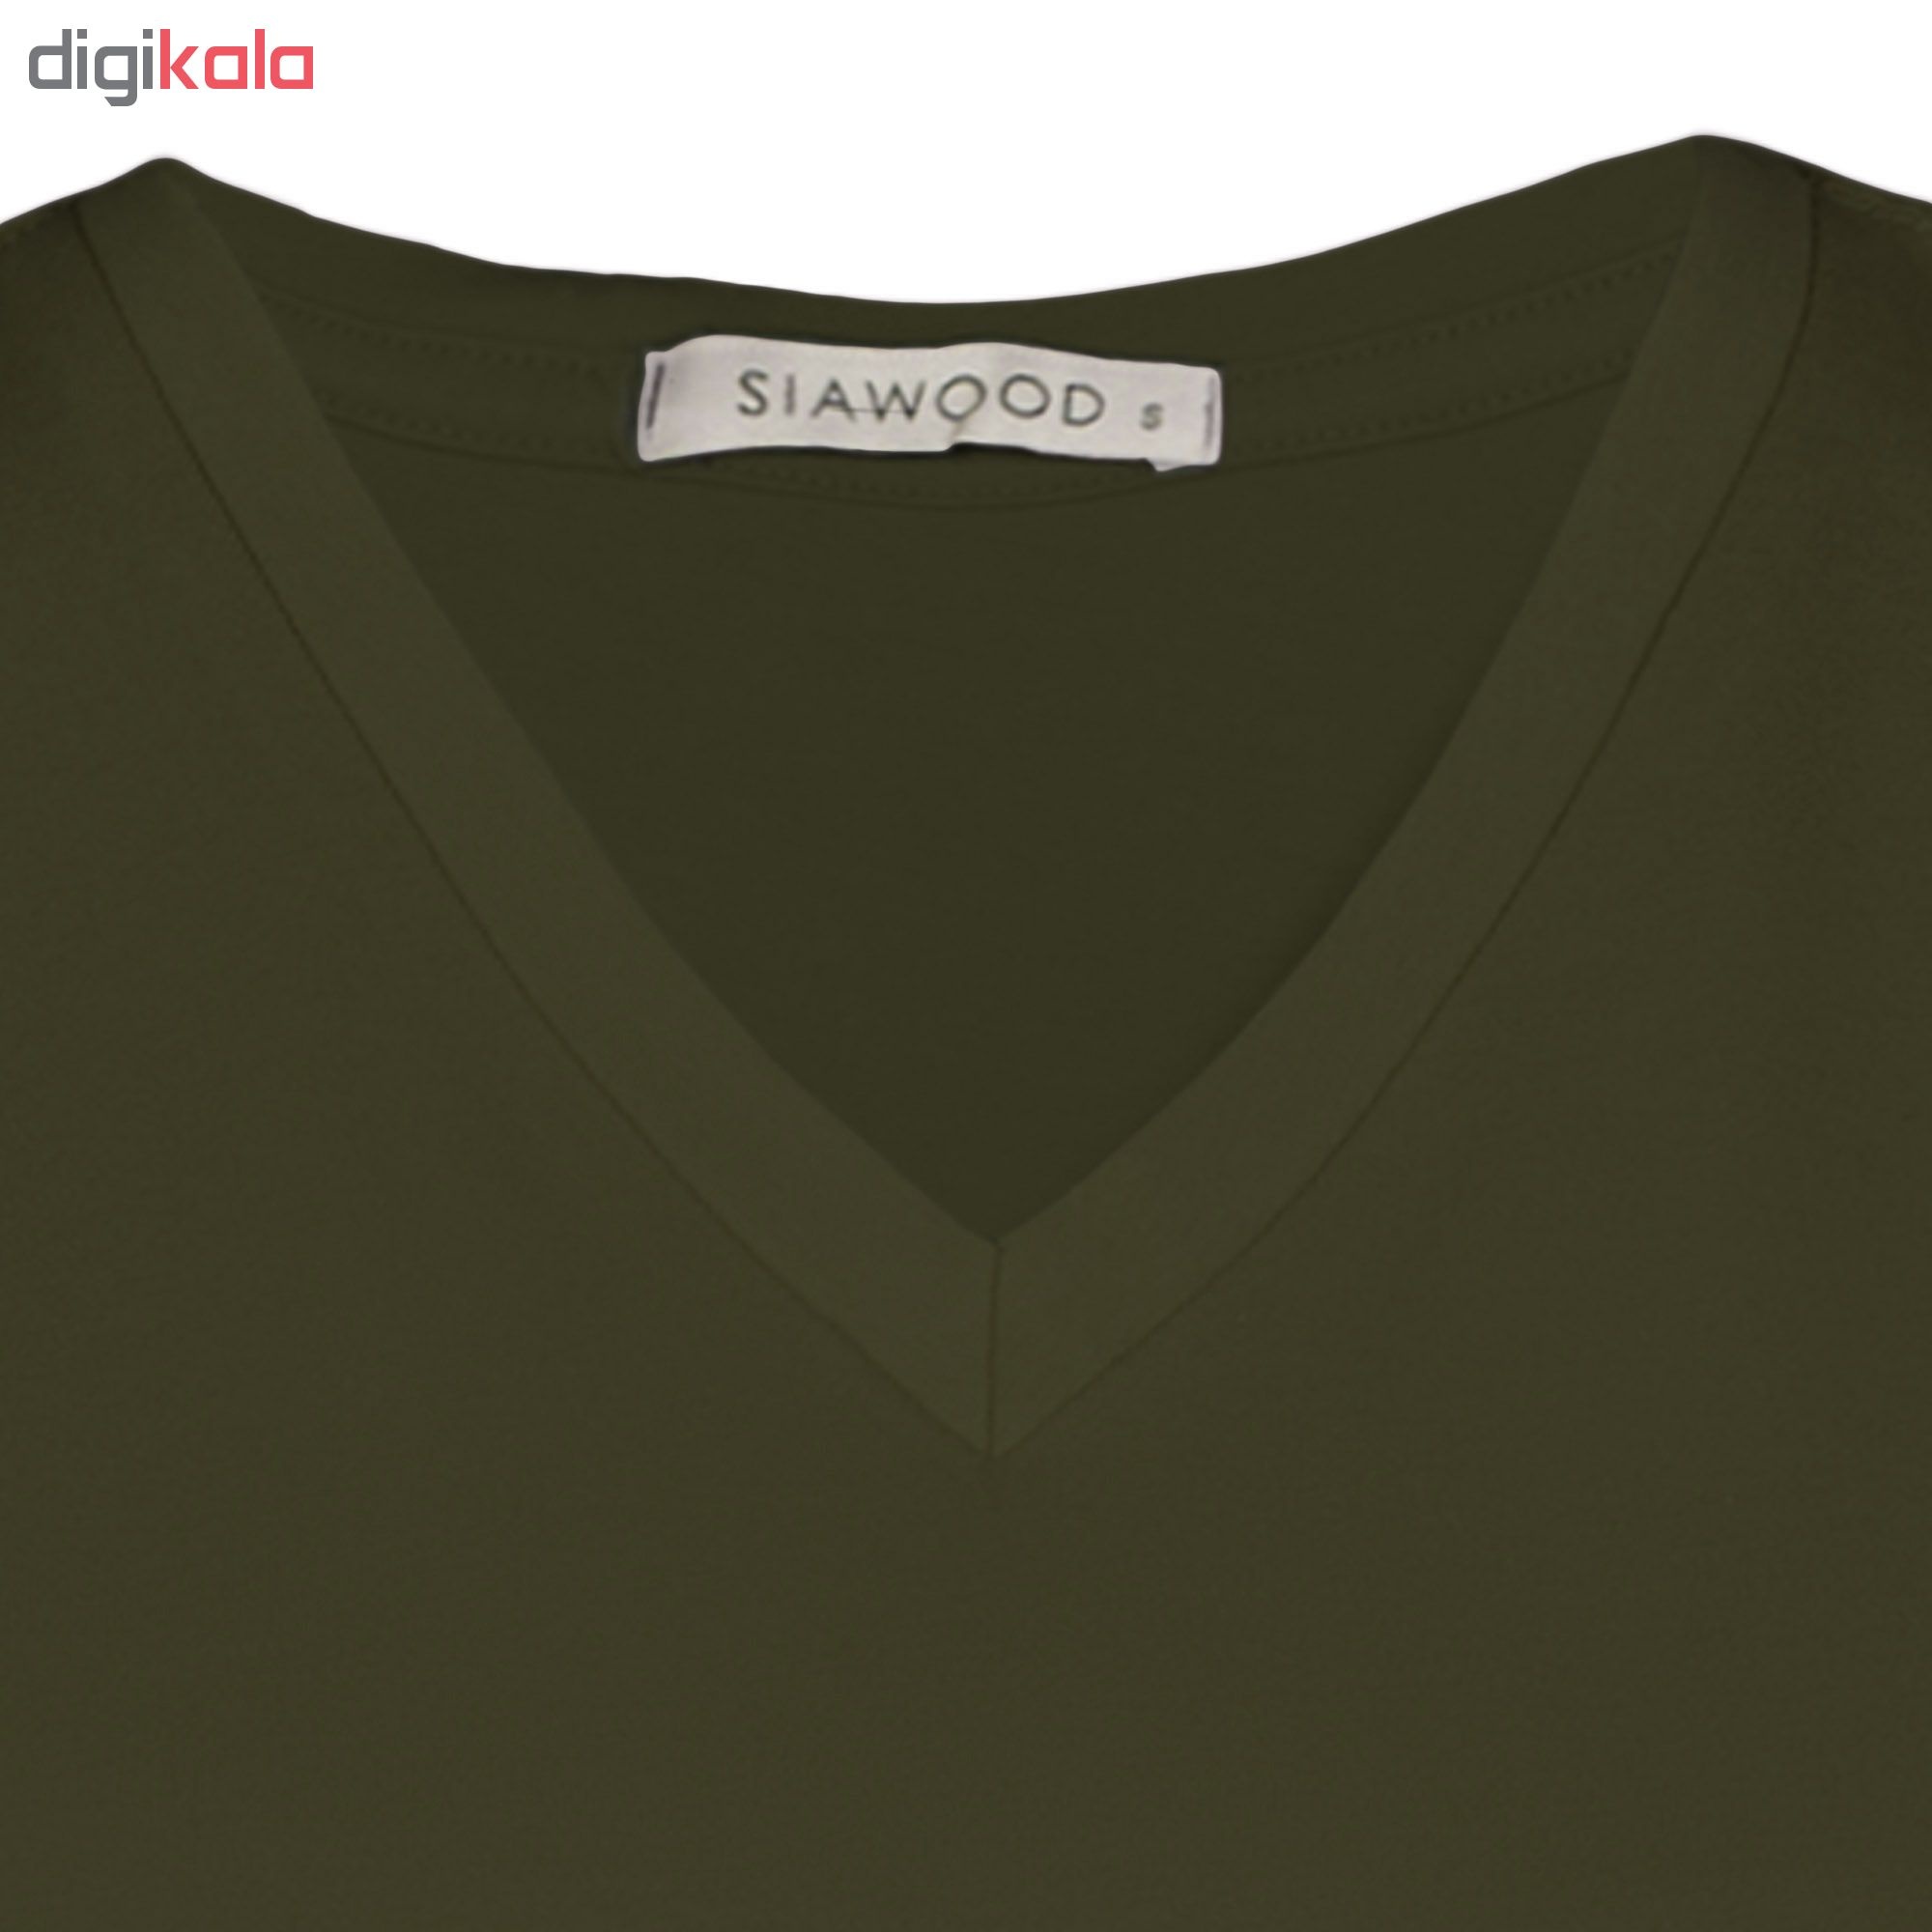 تی شرت زنانه سیاوود مدل V-BASIC کد 6100400-G0028 رنگ سبز